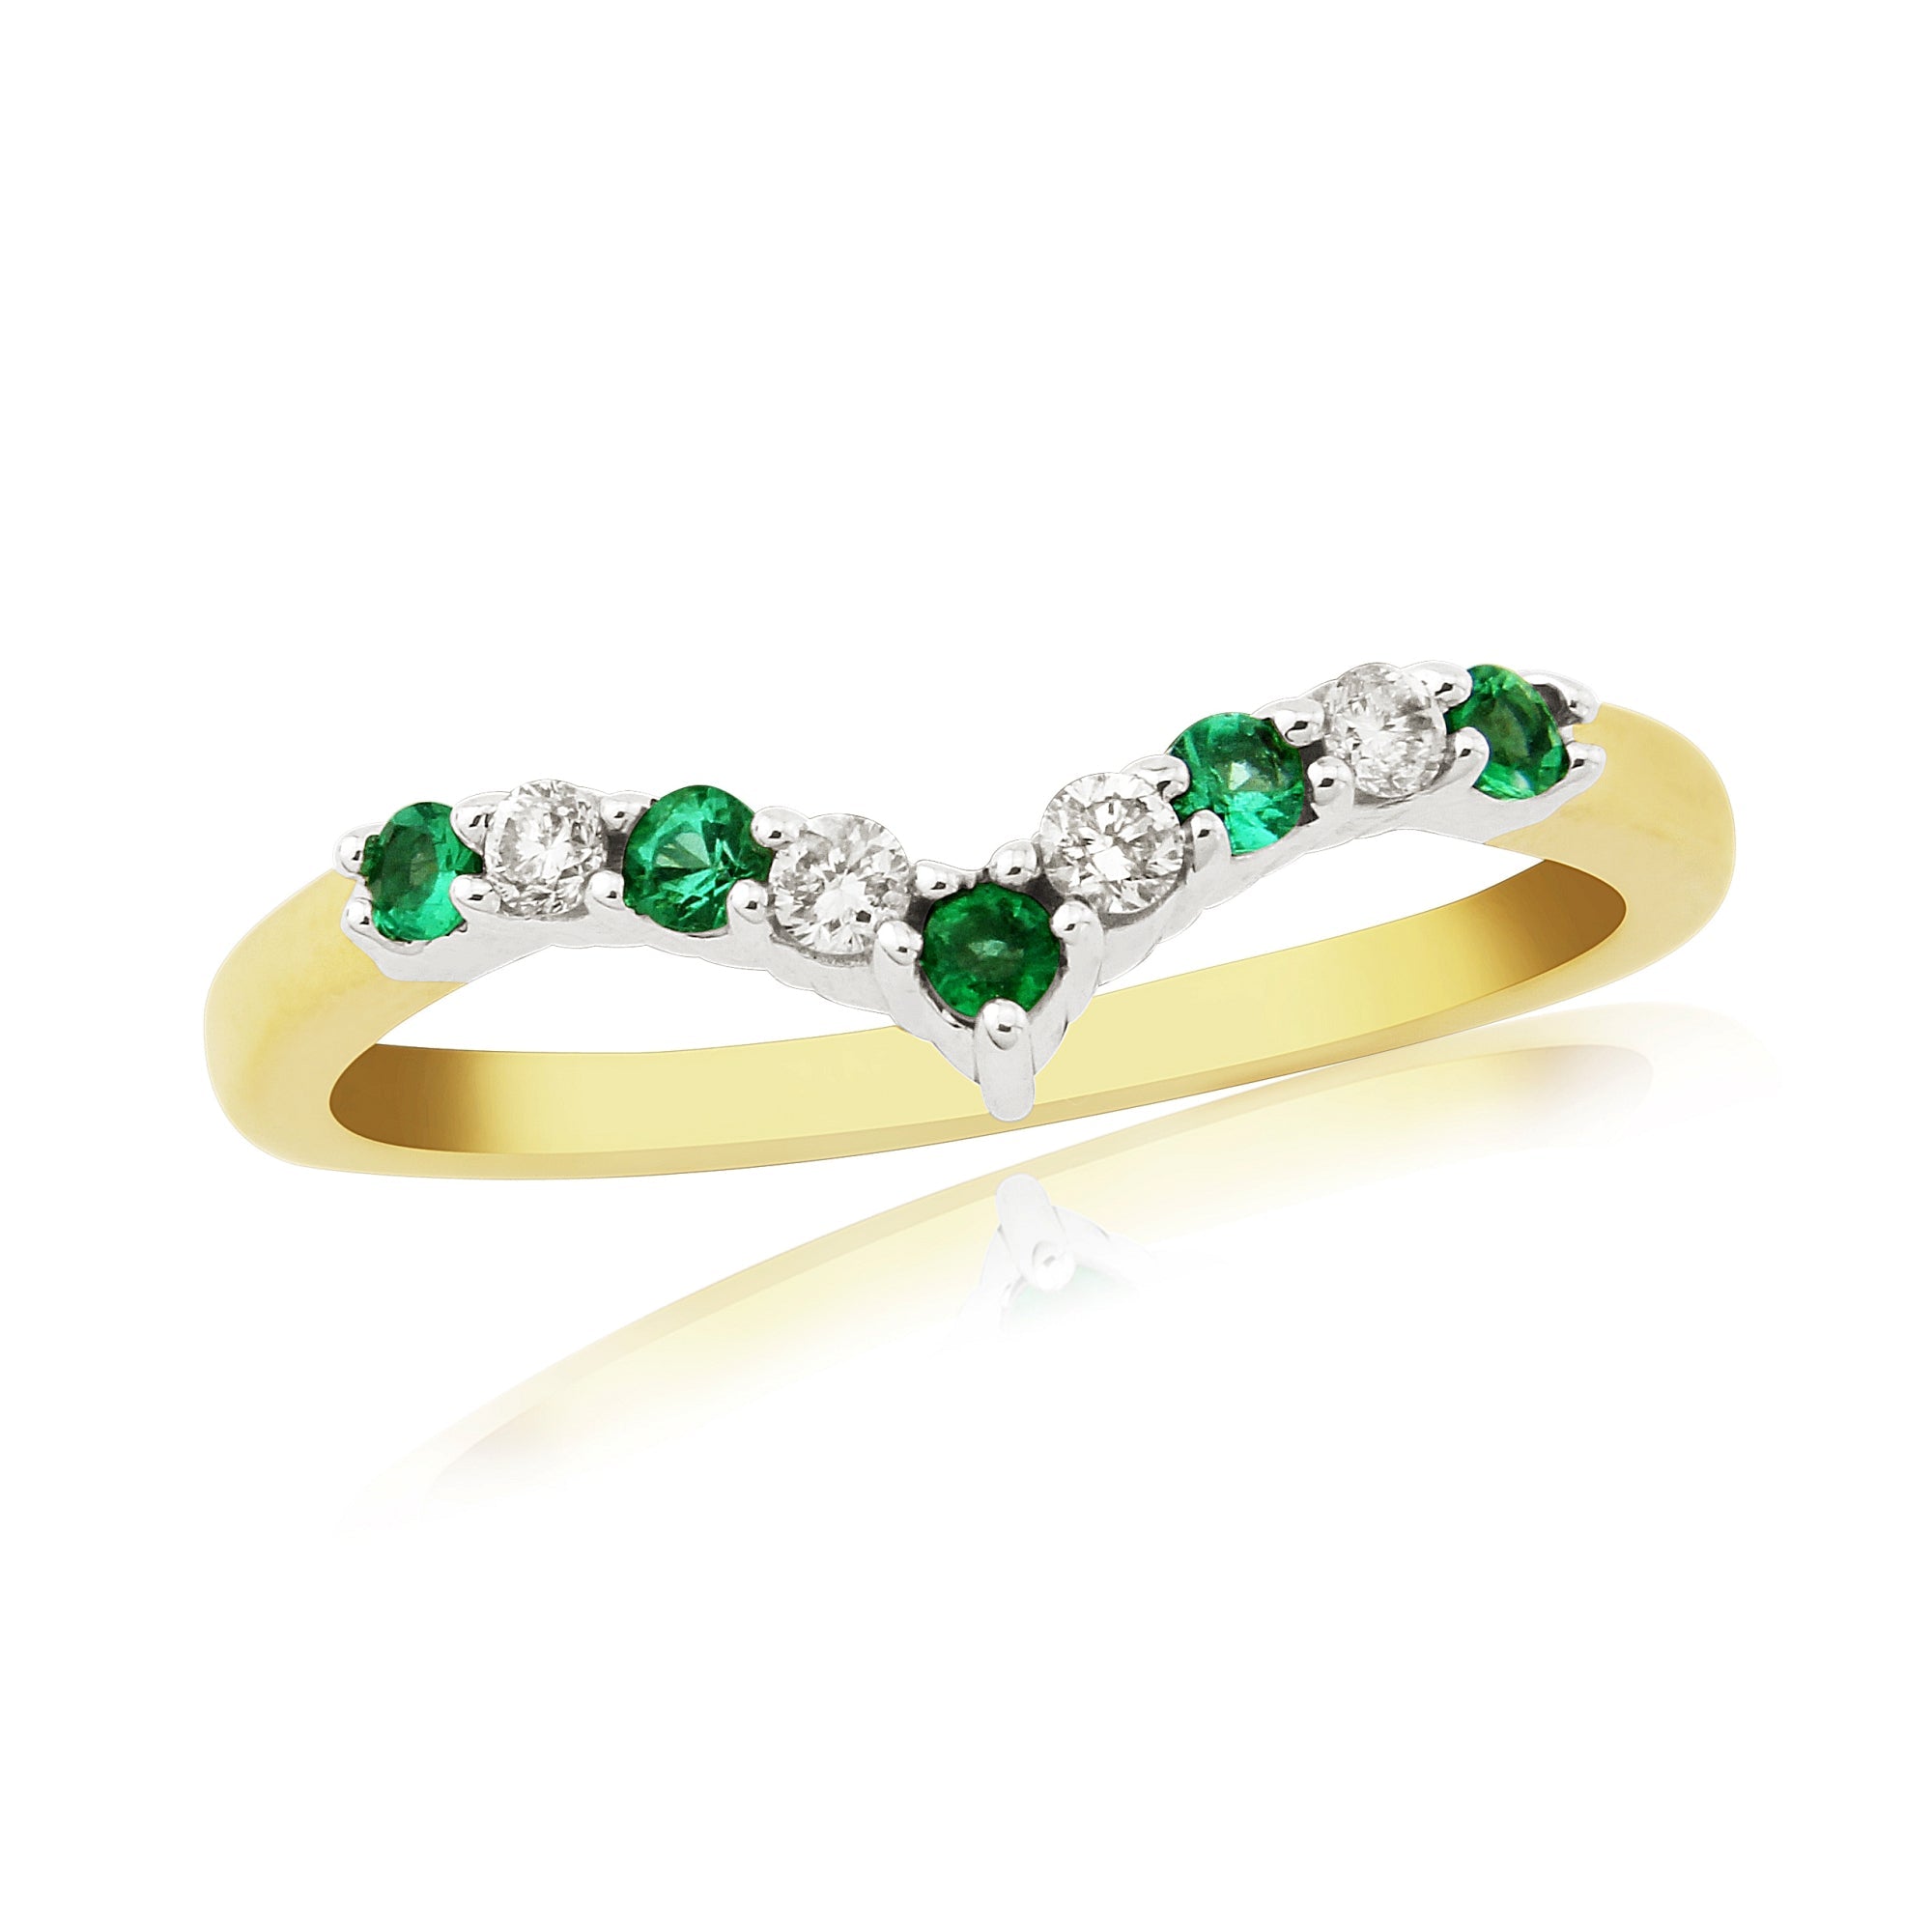 9ct gold 2.0mm round emerald & diamond wishbone ring 0.11ct